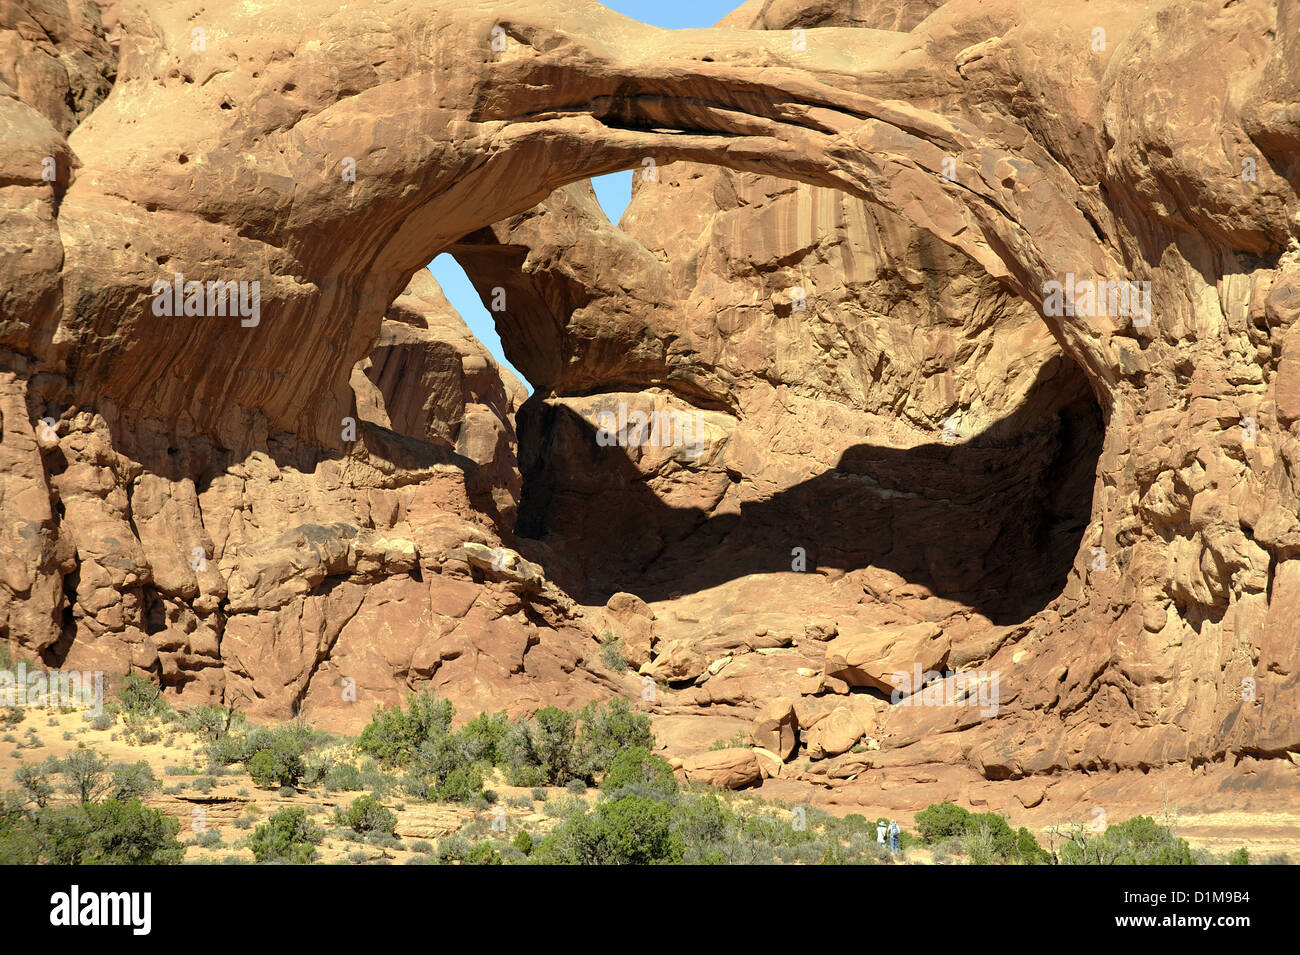 Arc double, Arches NP, près de Moab, Utah, aux Etats-Unis. Arch Rock double formation géologique avec les touristes en premier plan pour montrer l'échelle Banque D'Images